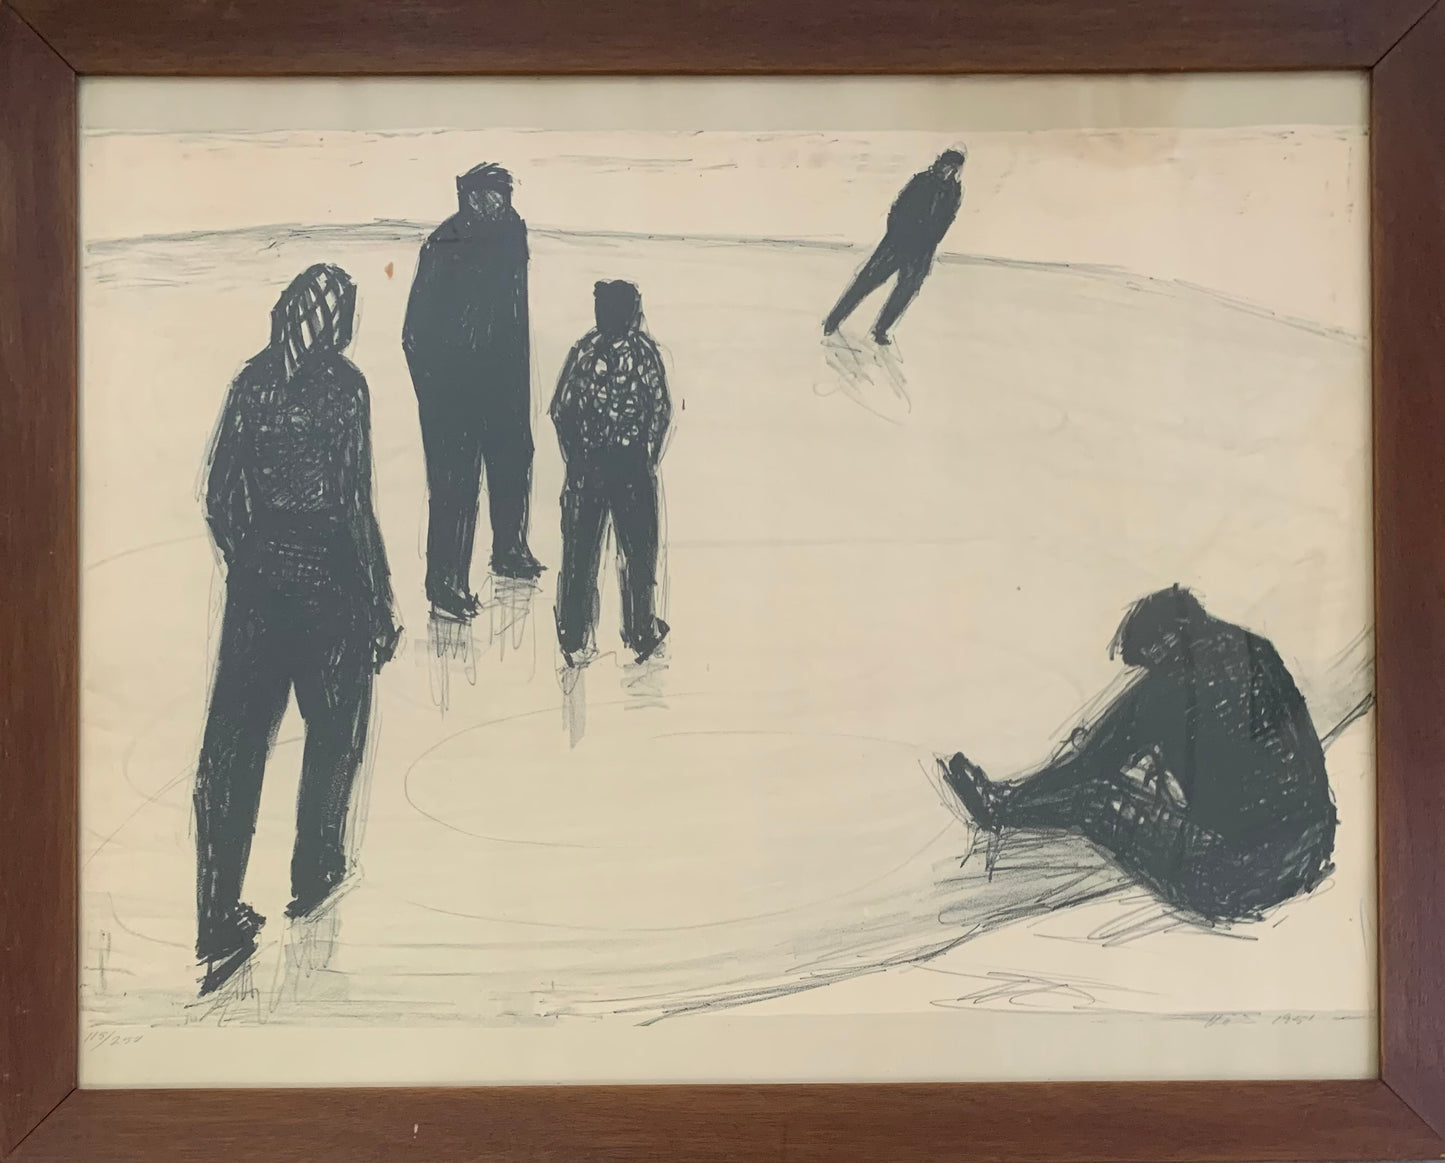 H. C. Høier. Ice skating scene, 1951